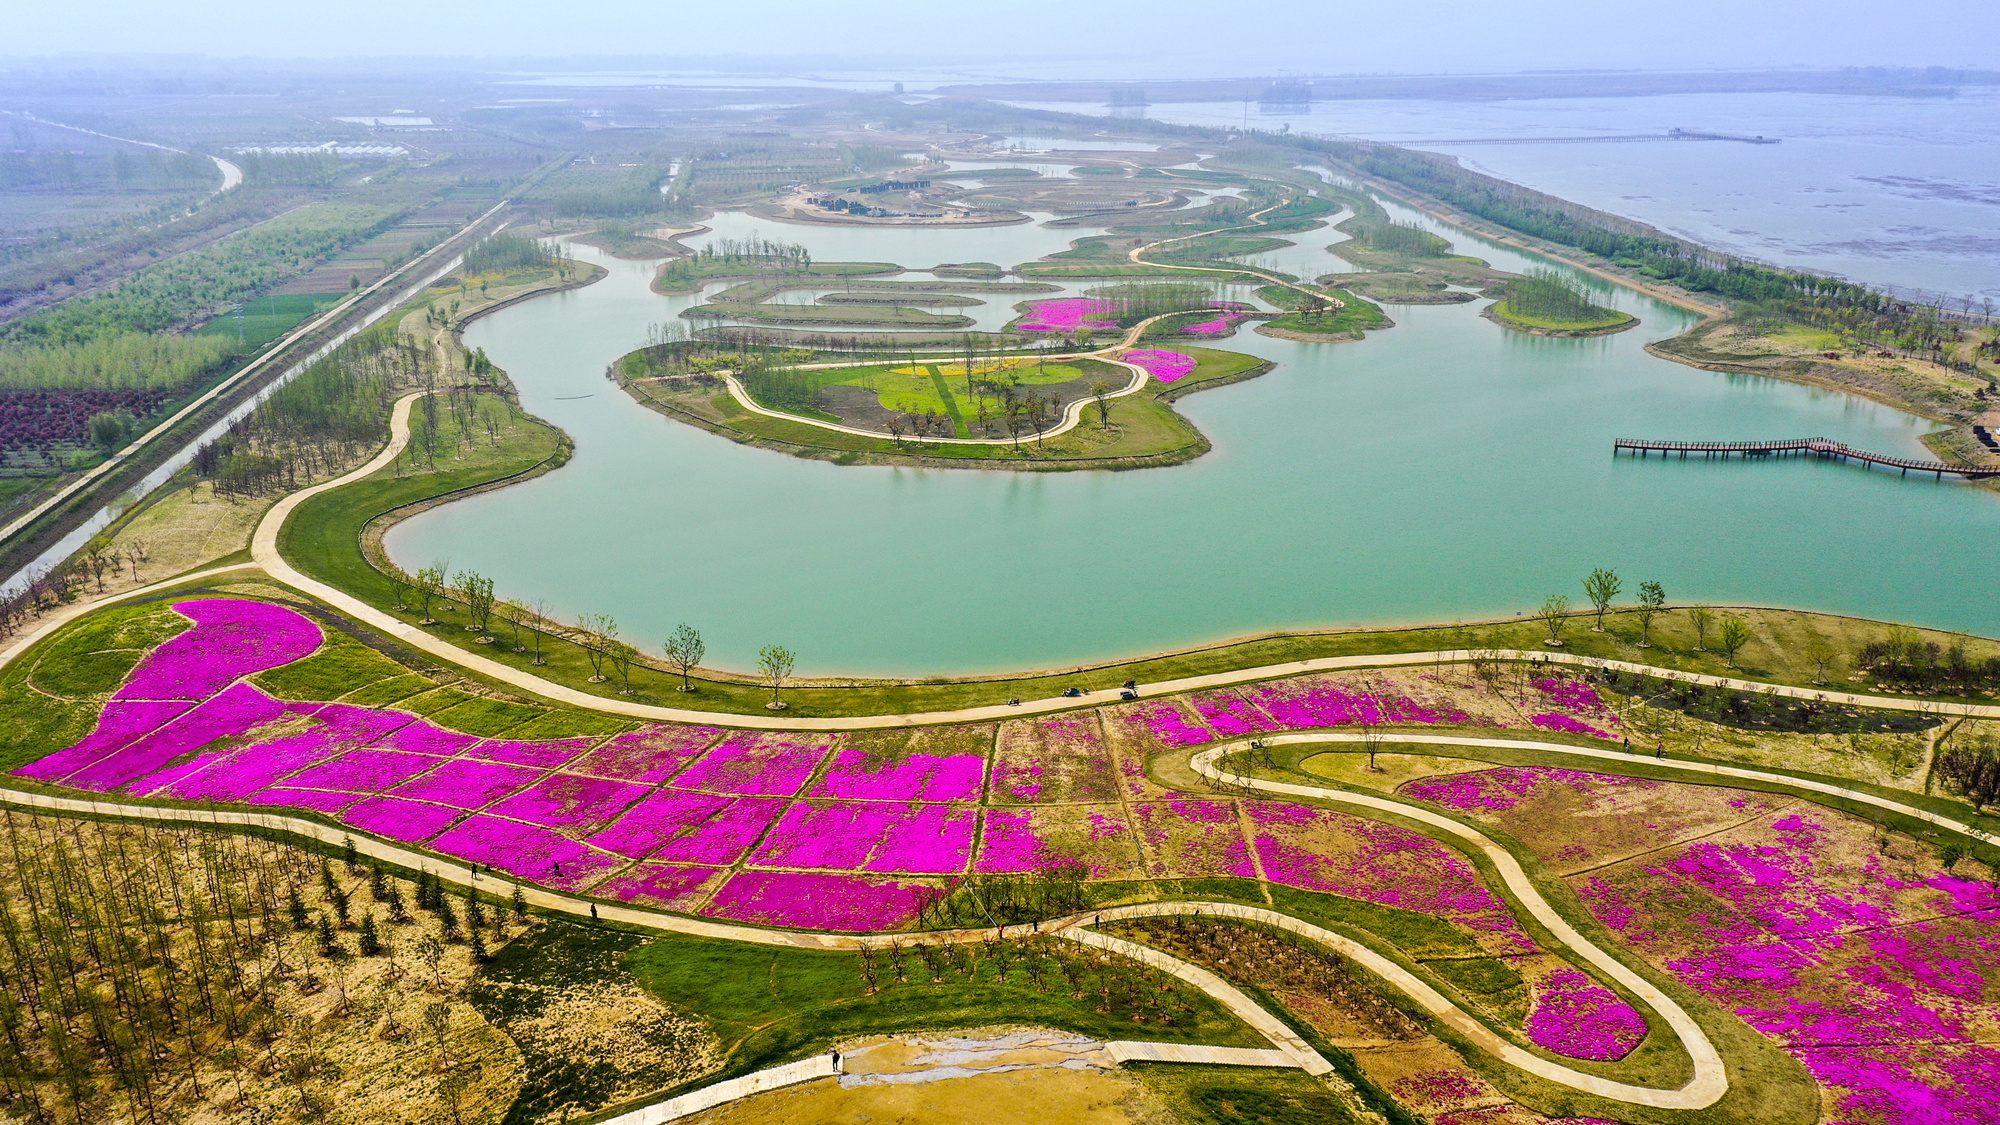 成子湖是我国第四大淡水湖——洪泽湖的重要组成部分，位于泗阳县南部、洪泽湖北岸，沿湖岸线总长72.3公里，覆盖泗阳3个乡镇的39个村，总人口15万。起初由于公路、航道等级偏低，连通度不高等问题，导致区域内15.97万亩耕地有效灌溉面积不足7.5万亩，成为地方经济发展滞后的主要因素。2014年11月22日，江苏省政府正式批复泗阳县“同意设立江苏省泗阳成子湖旅游度假区”，这也是泗阳县首个省级旅游度假区。